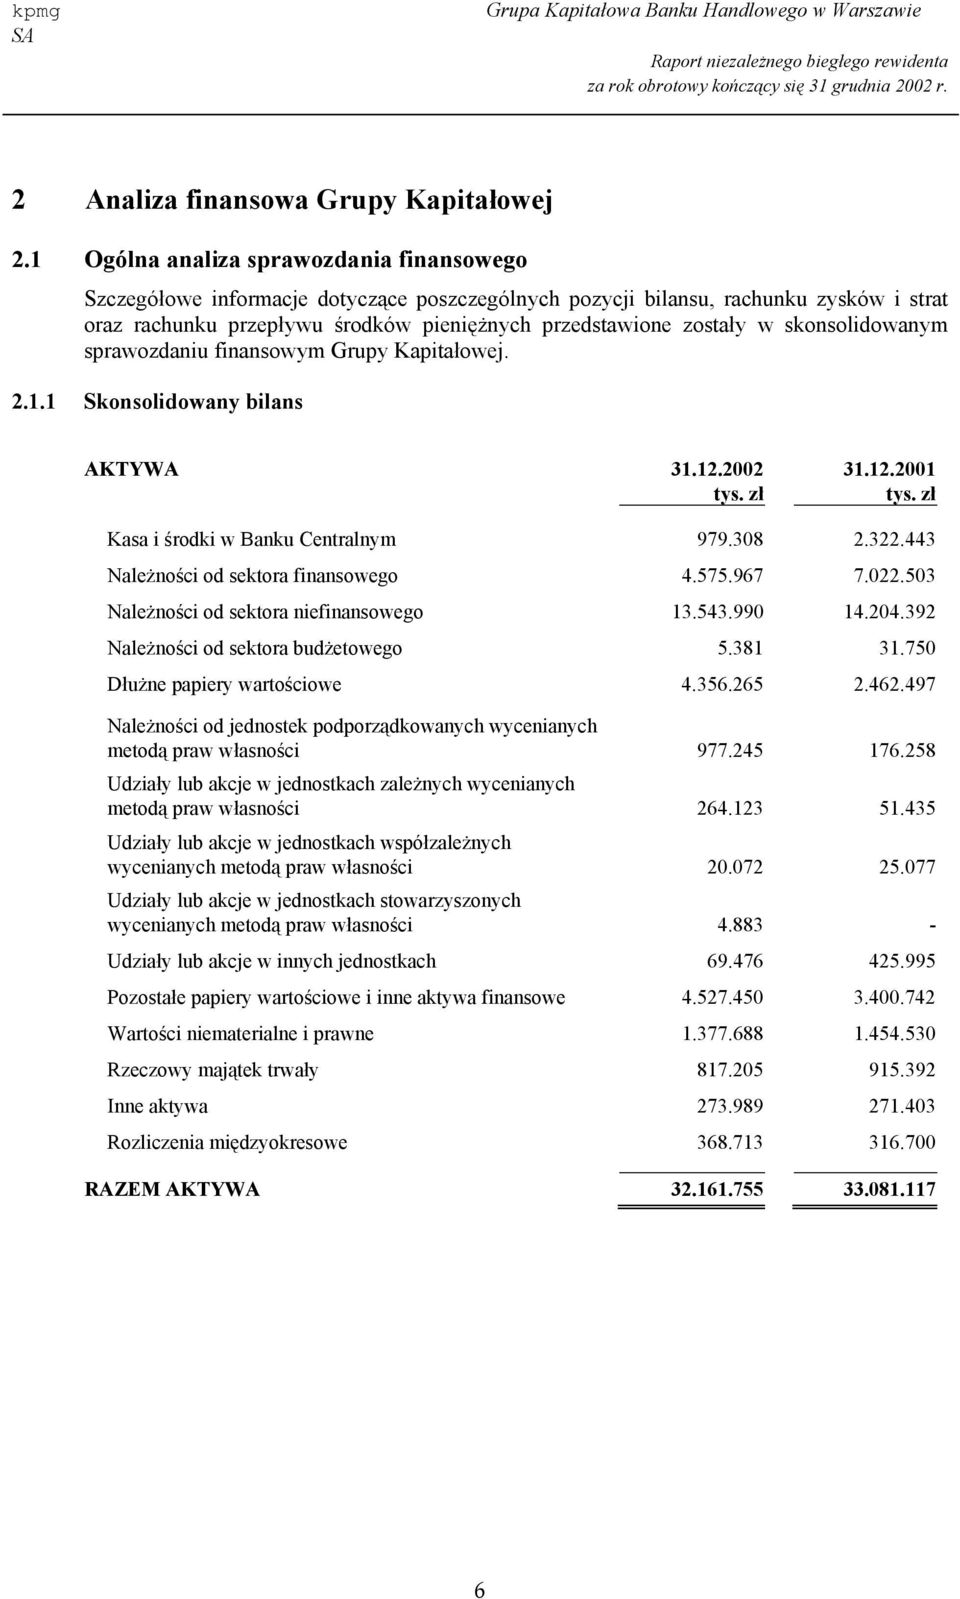 skonsolidowanym sprawozdaniu finansowym Grupy Kapitałowej. 2.1.1 Skonsolidowany bilans AKTYWA 31.12.2002 31.12.2001 Kasa i środki w Banku Centralnym 979.308 2.322.